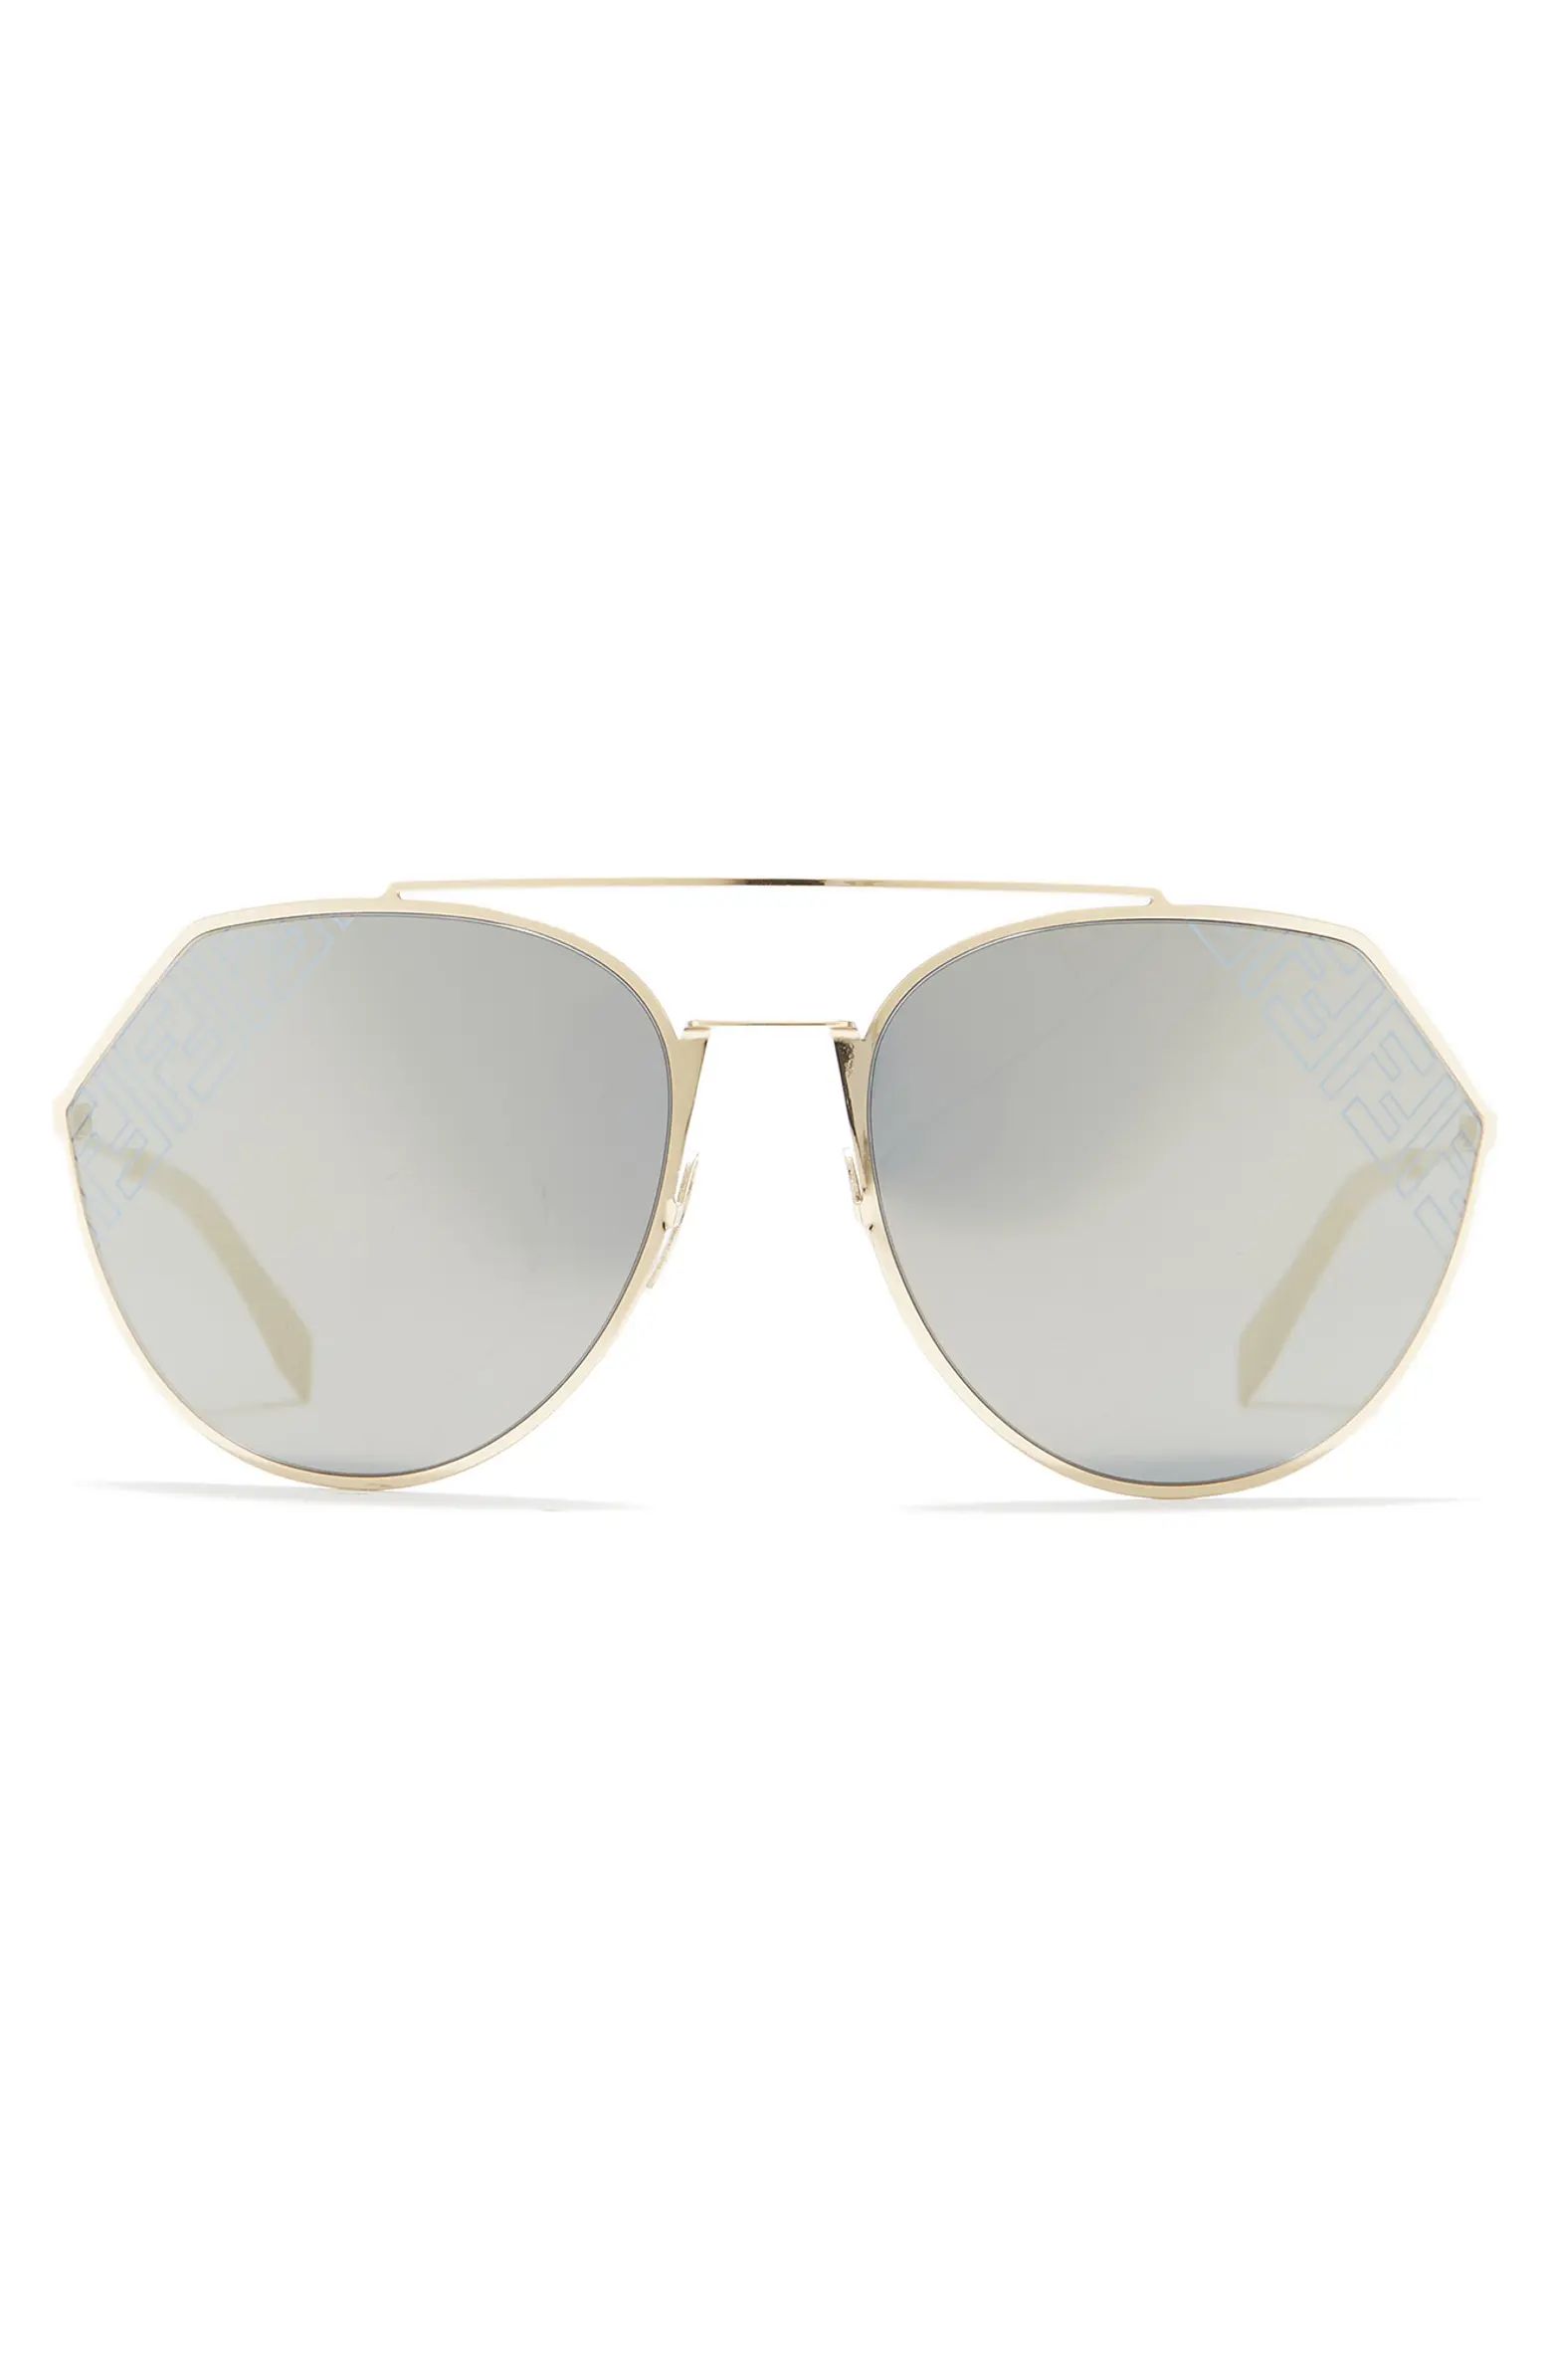 FENDI 67mm Geometric Sunglasses | Nordstromrack | Nordstrom Rack